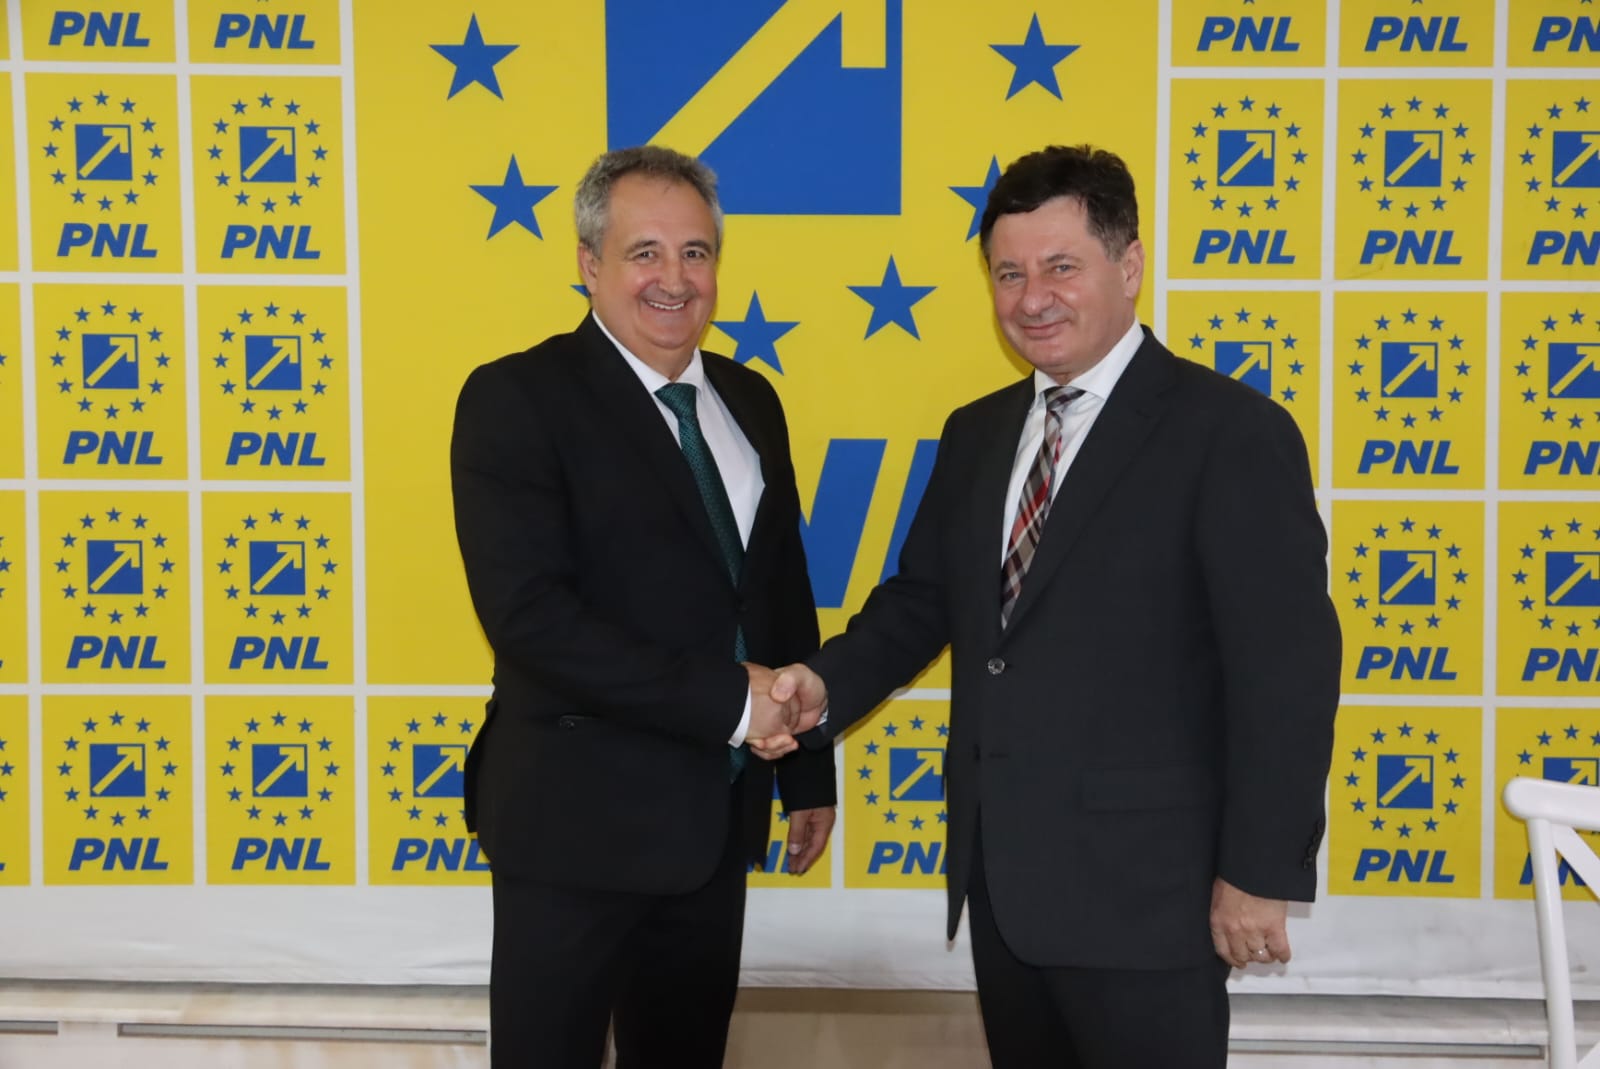 Președintele CJ Arad Iustin Cionca Am lansat candidatura lui Florin Dema și a echipei sale din PNL la Primăria Șimand